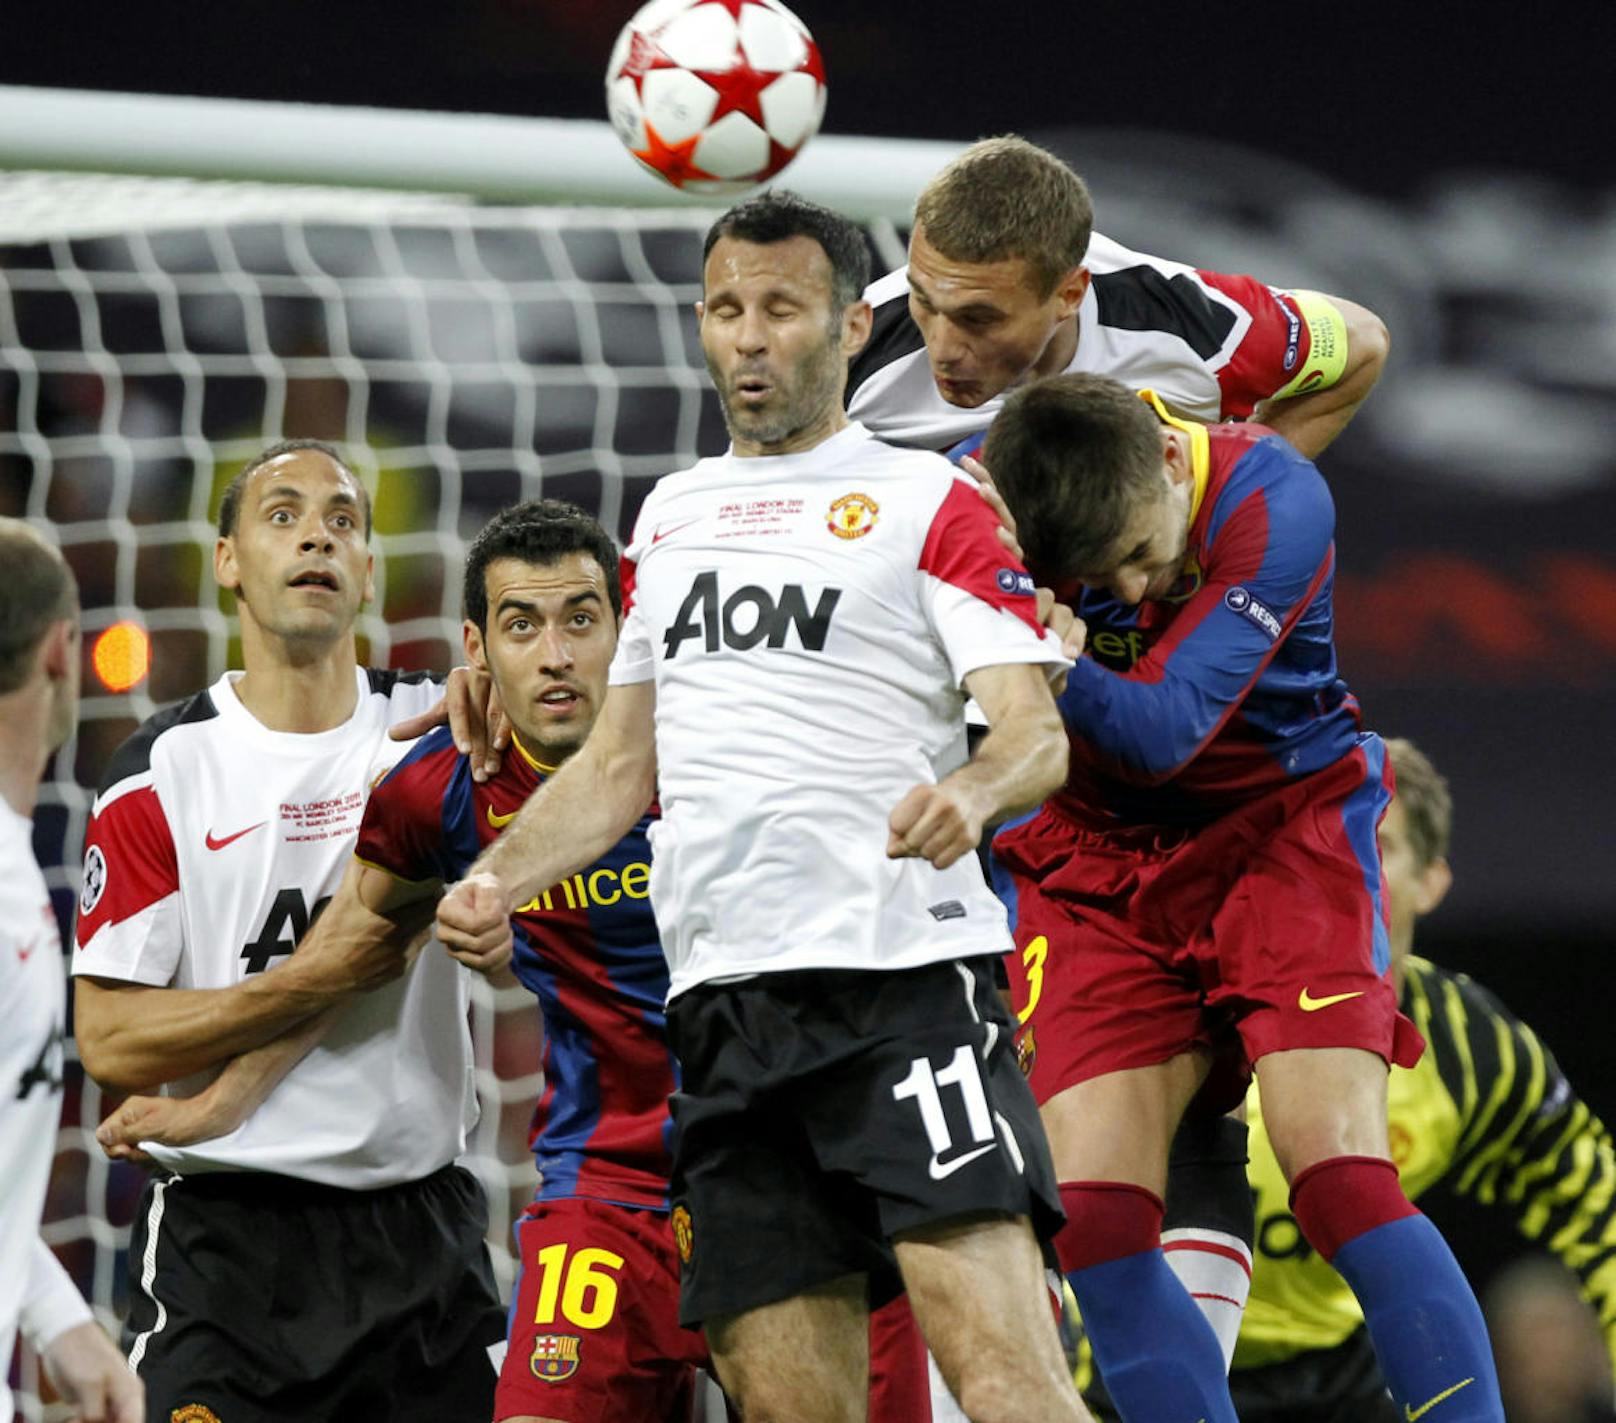 2011 lautete das Endspiel erneut Barcelona gegen Manchester United. Diesmal wurde im Londoner Wembley Stadion gekickt.